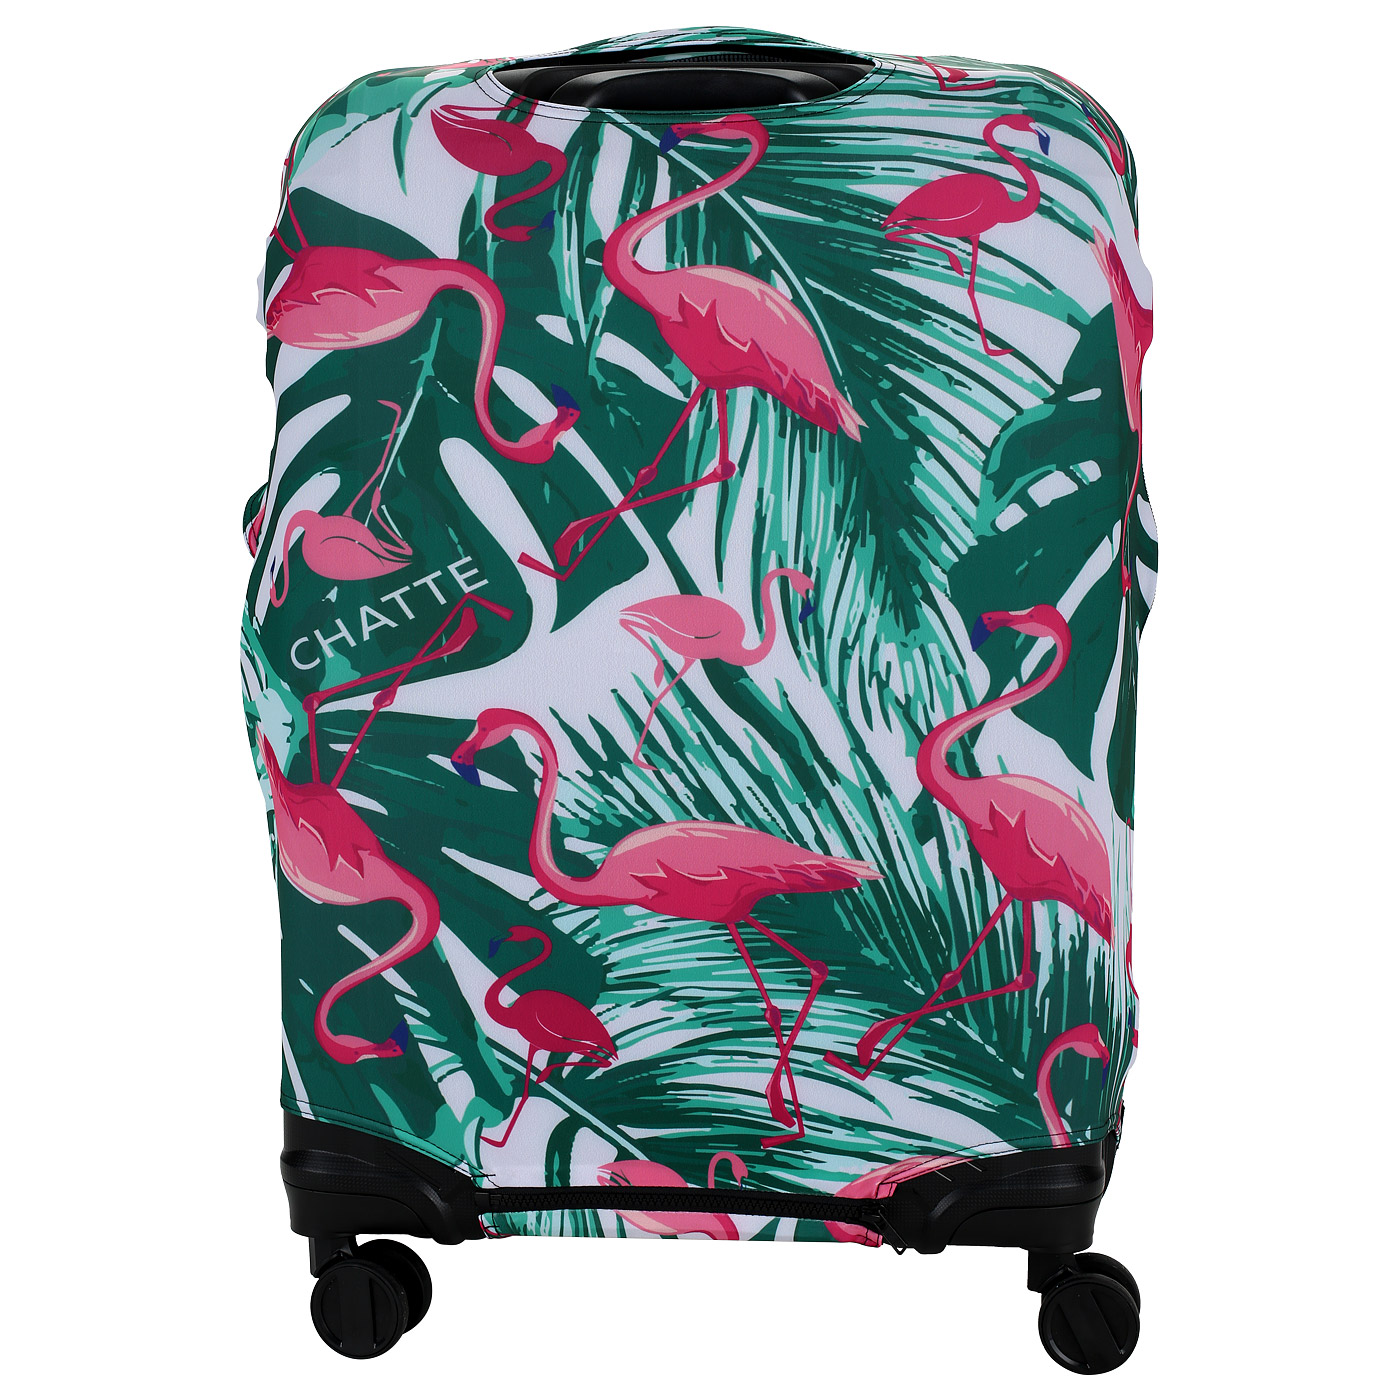 Чехол с принтом для большого чемодана Chatte Flamingo